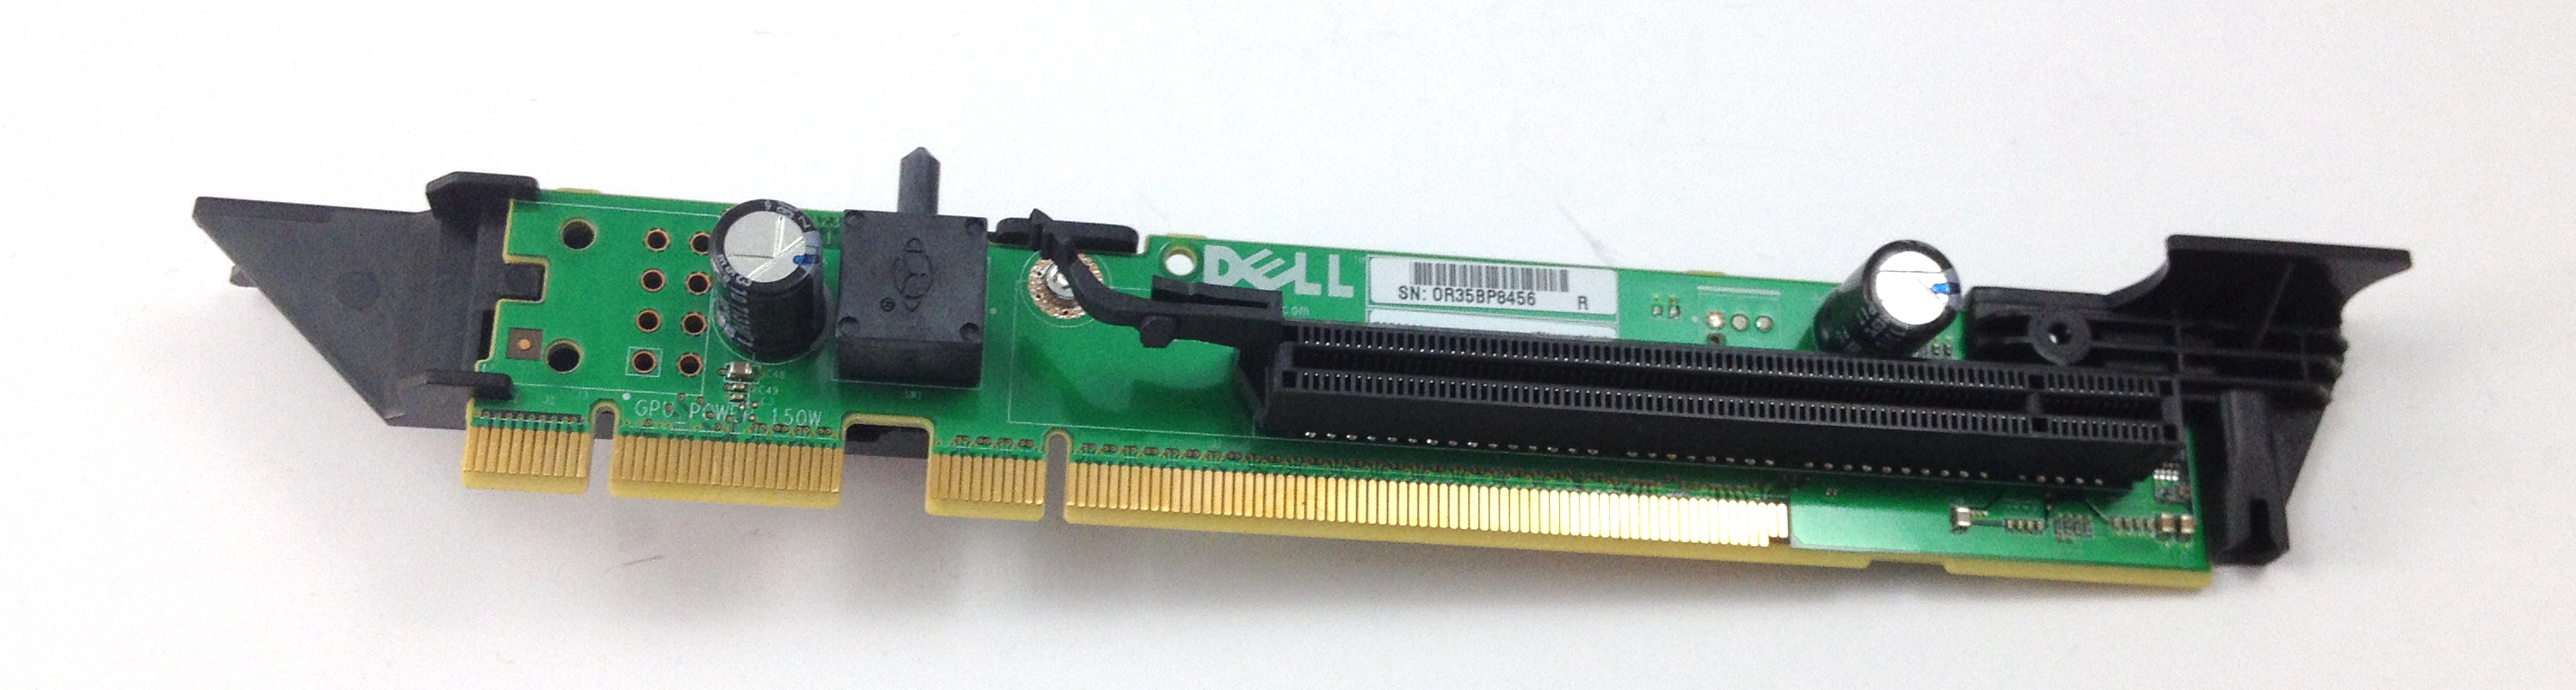 Dell Riser Card 3 For Dell PowerEdge R620 Slot 2 PCI-E 3.0 X16 (34CJP)